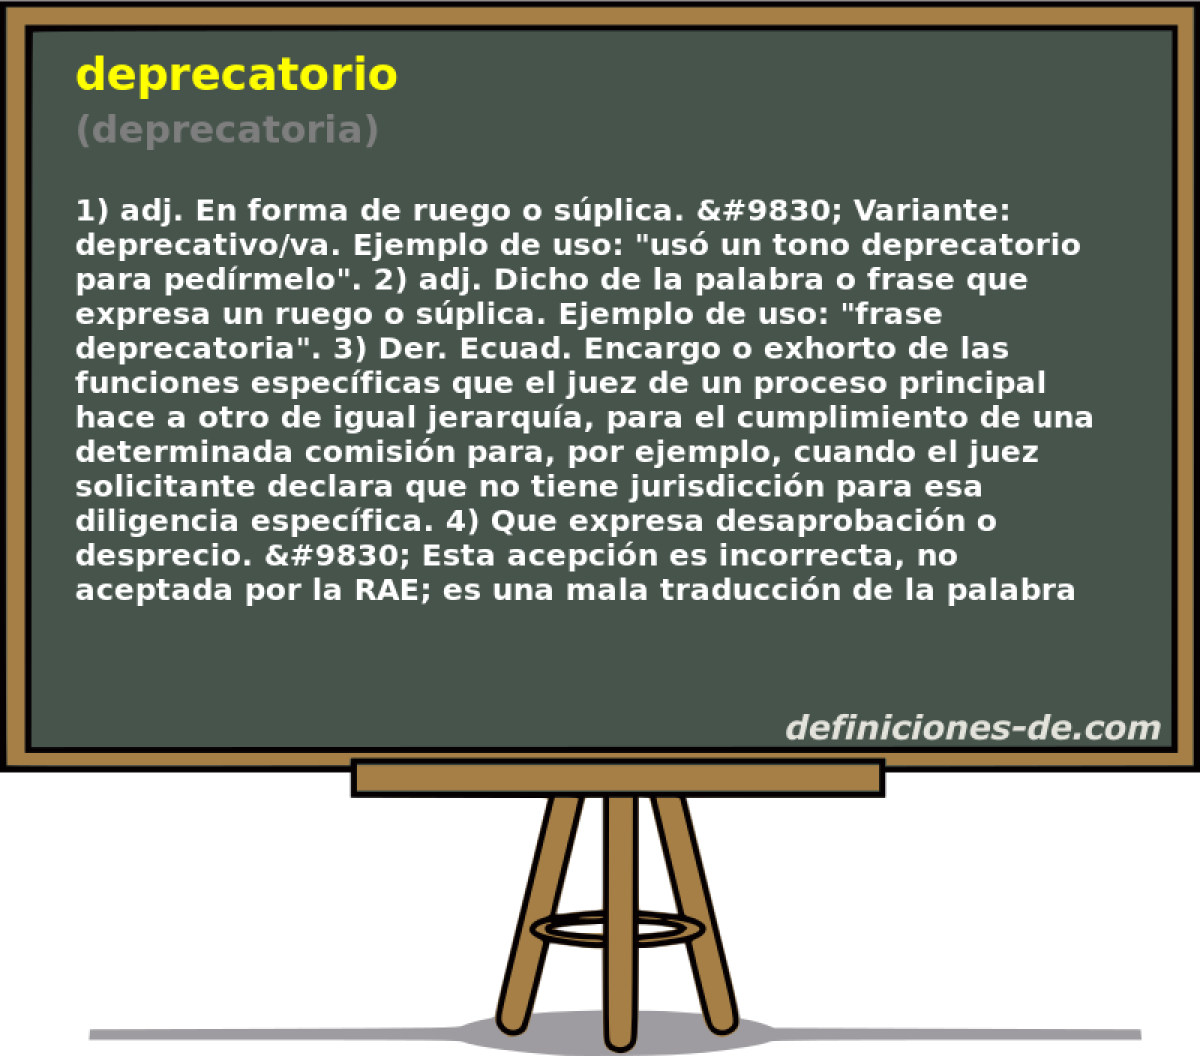 deprecatorio (deprecatoria)